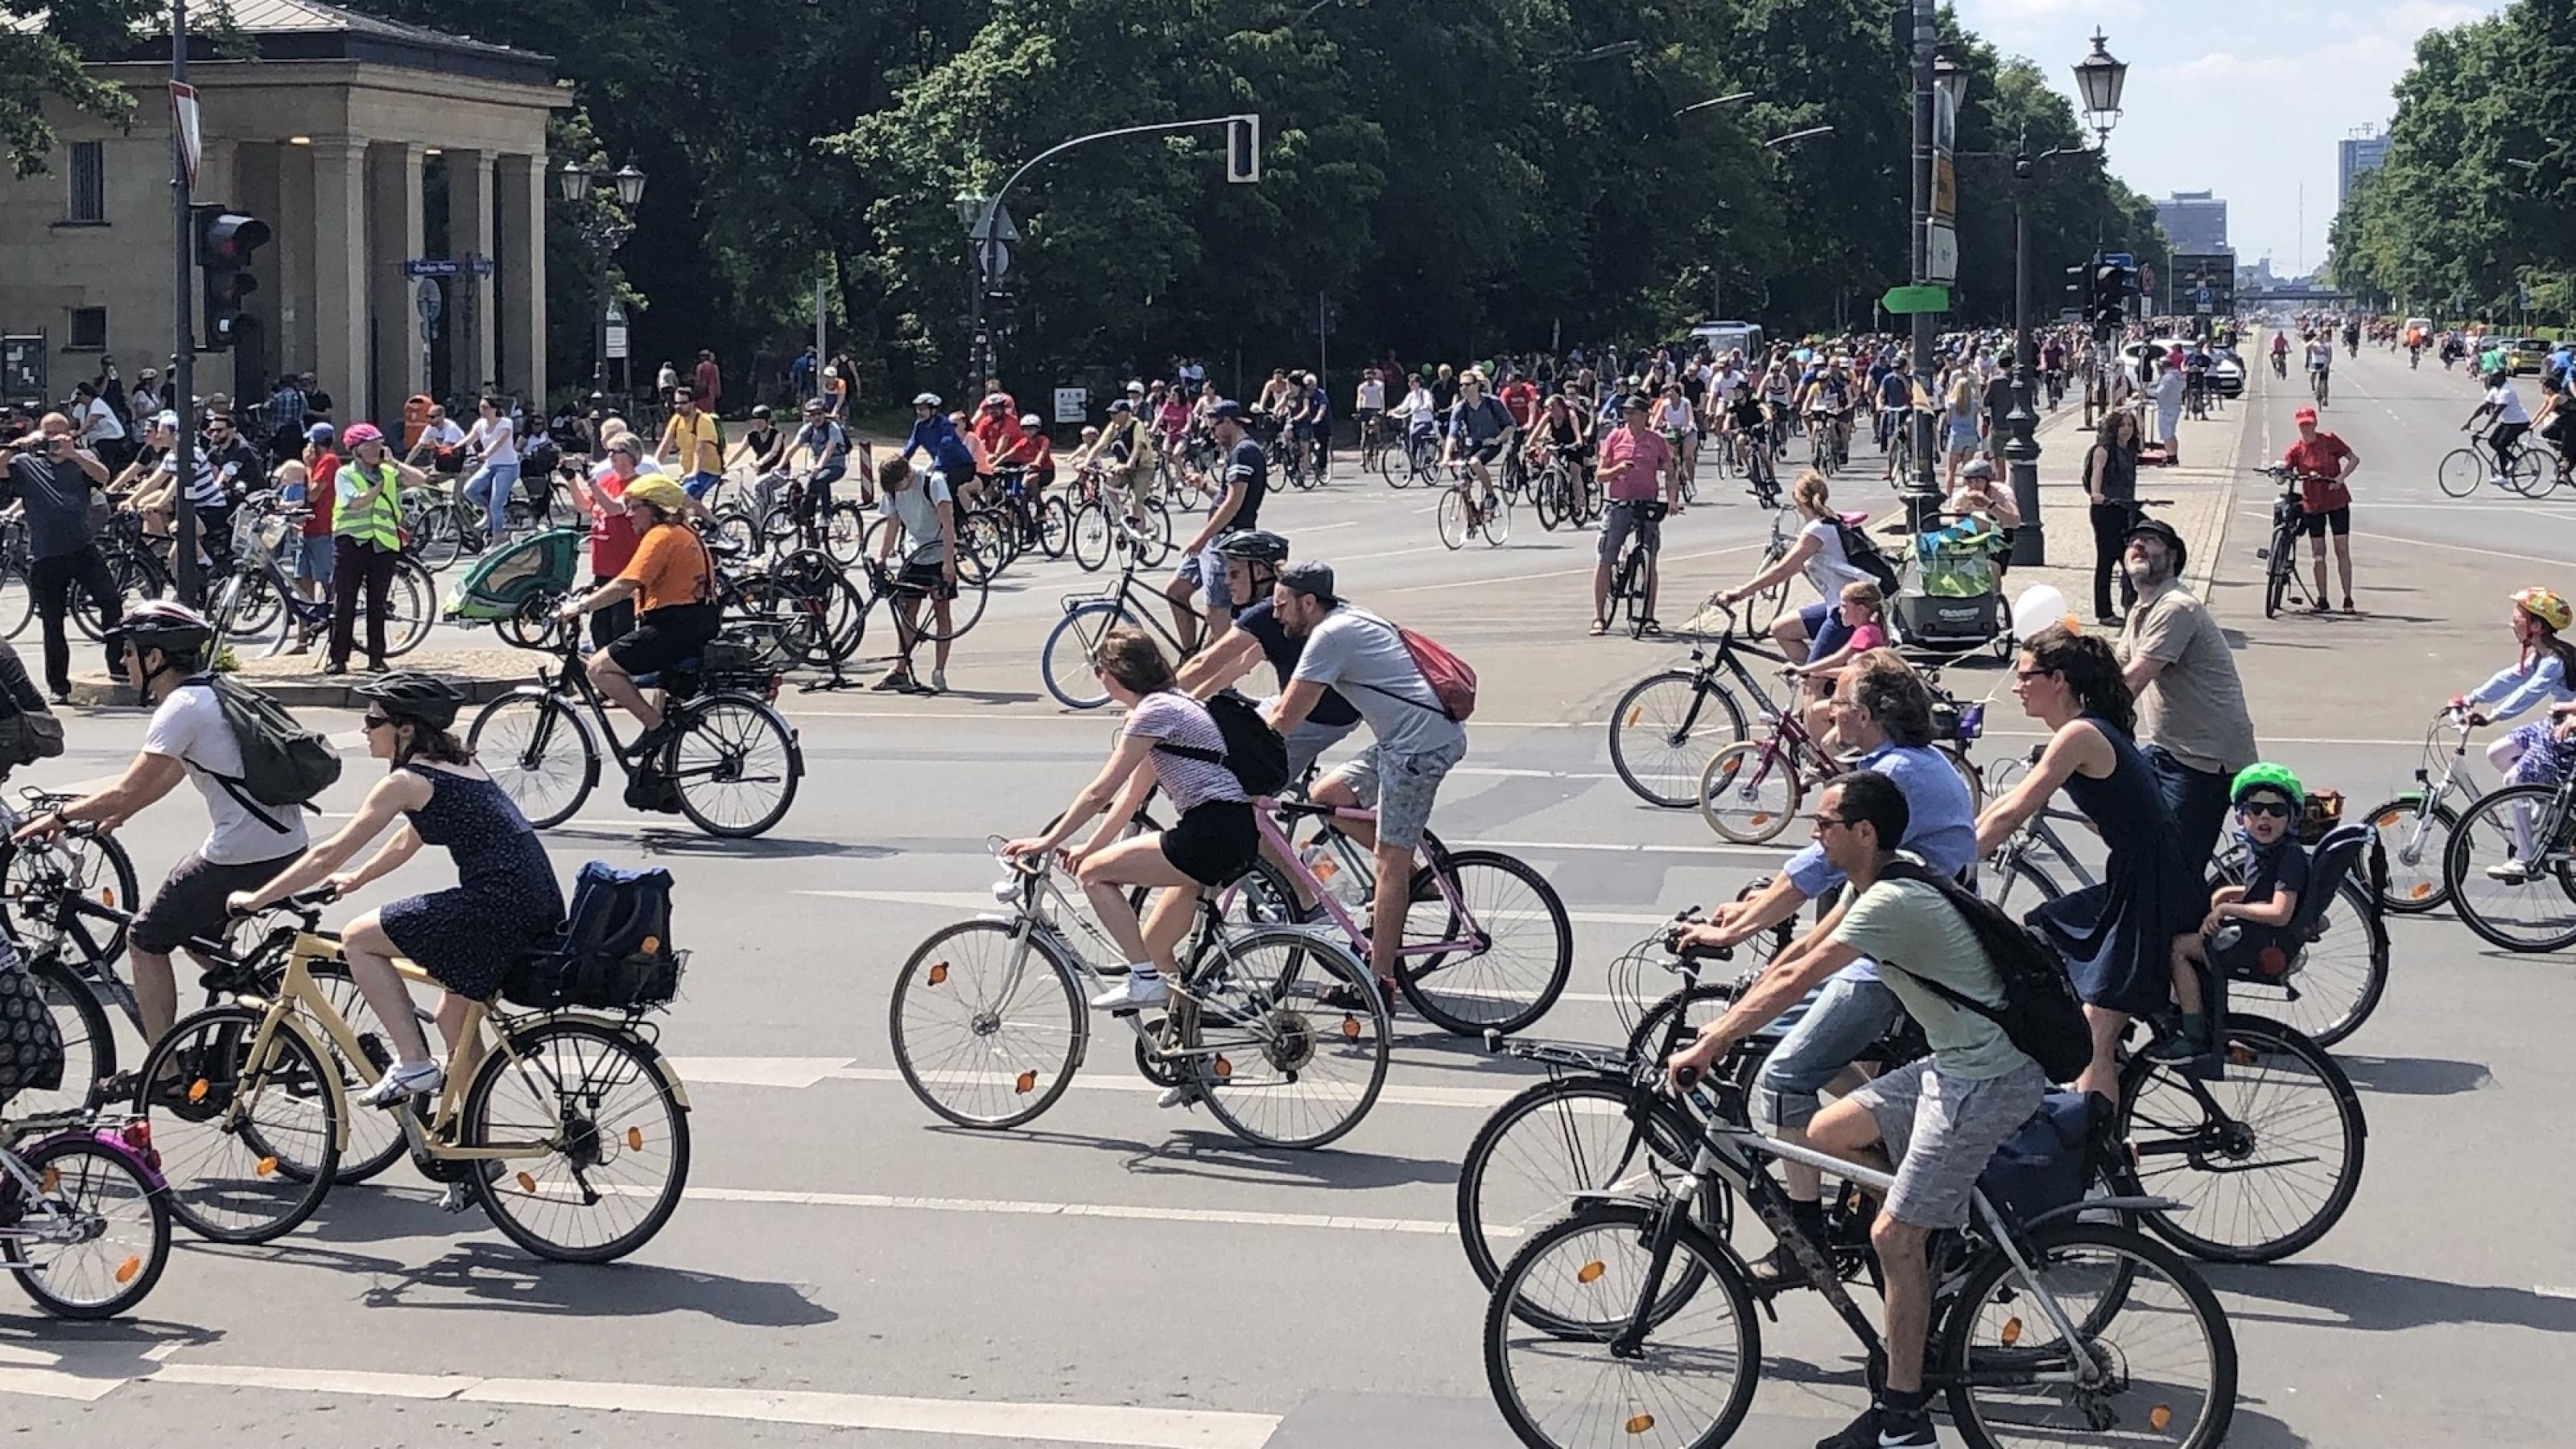 Viele Menschen sind bei einer Fahrraddemo auf Fahrrädern unterwegs